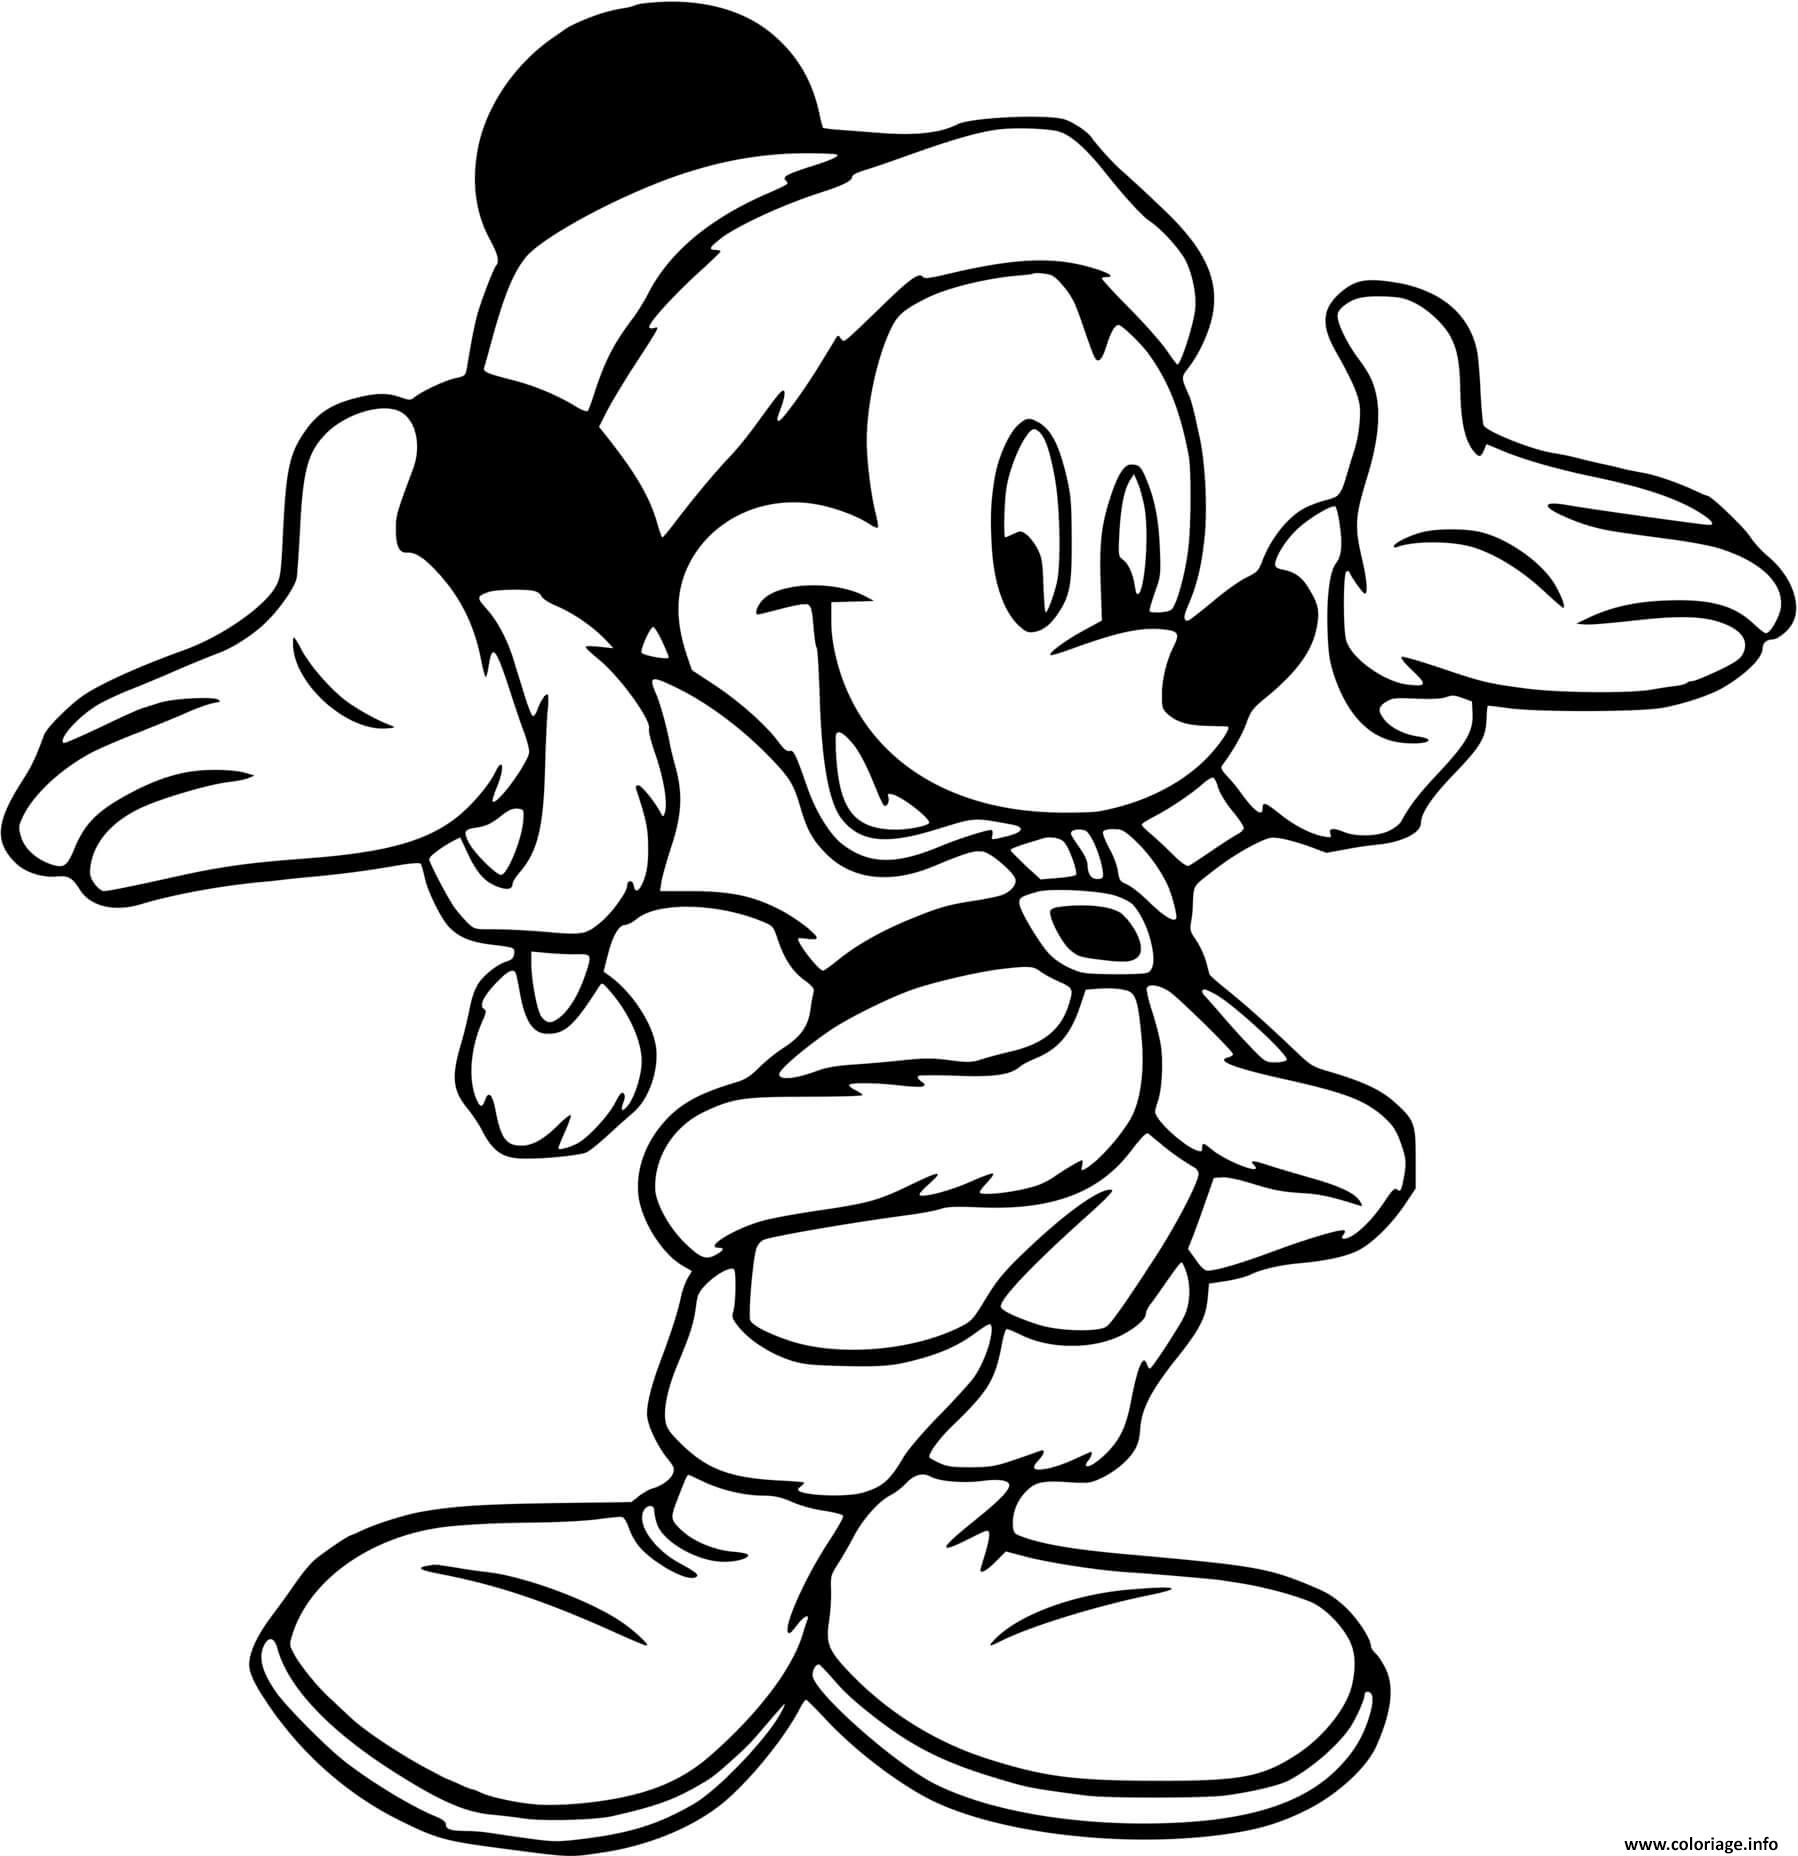 Dessin Mickey Mouse as a cute Santa Claus Coloriage Gratuit à Imprimer